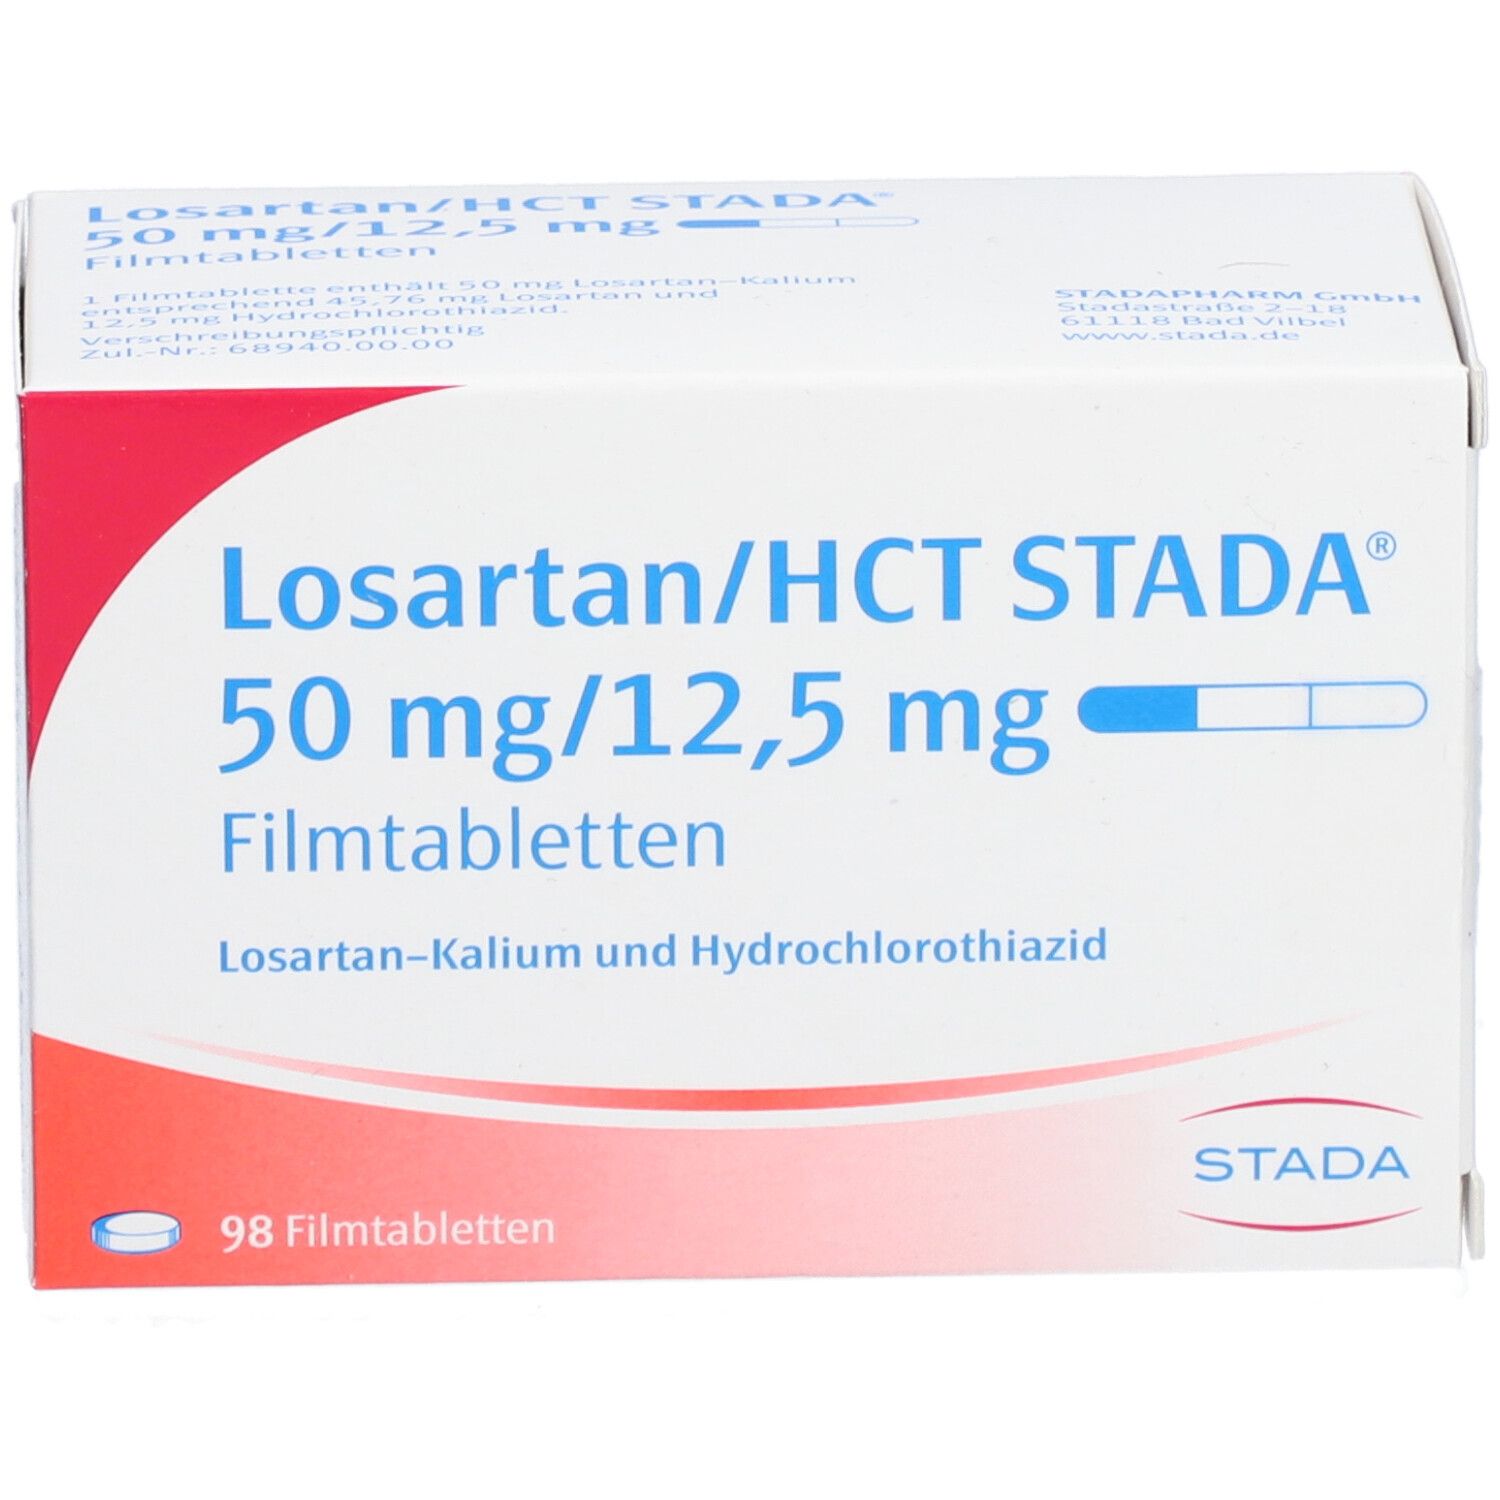 Losartan/HCT Stada® 50 mg/12,5 mg